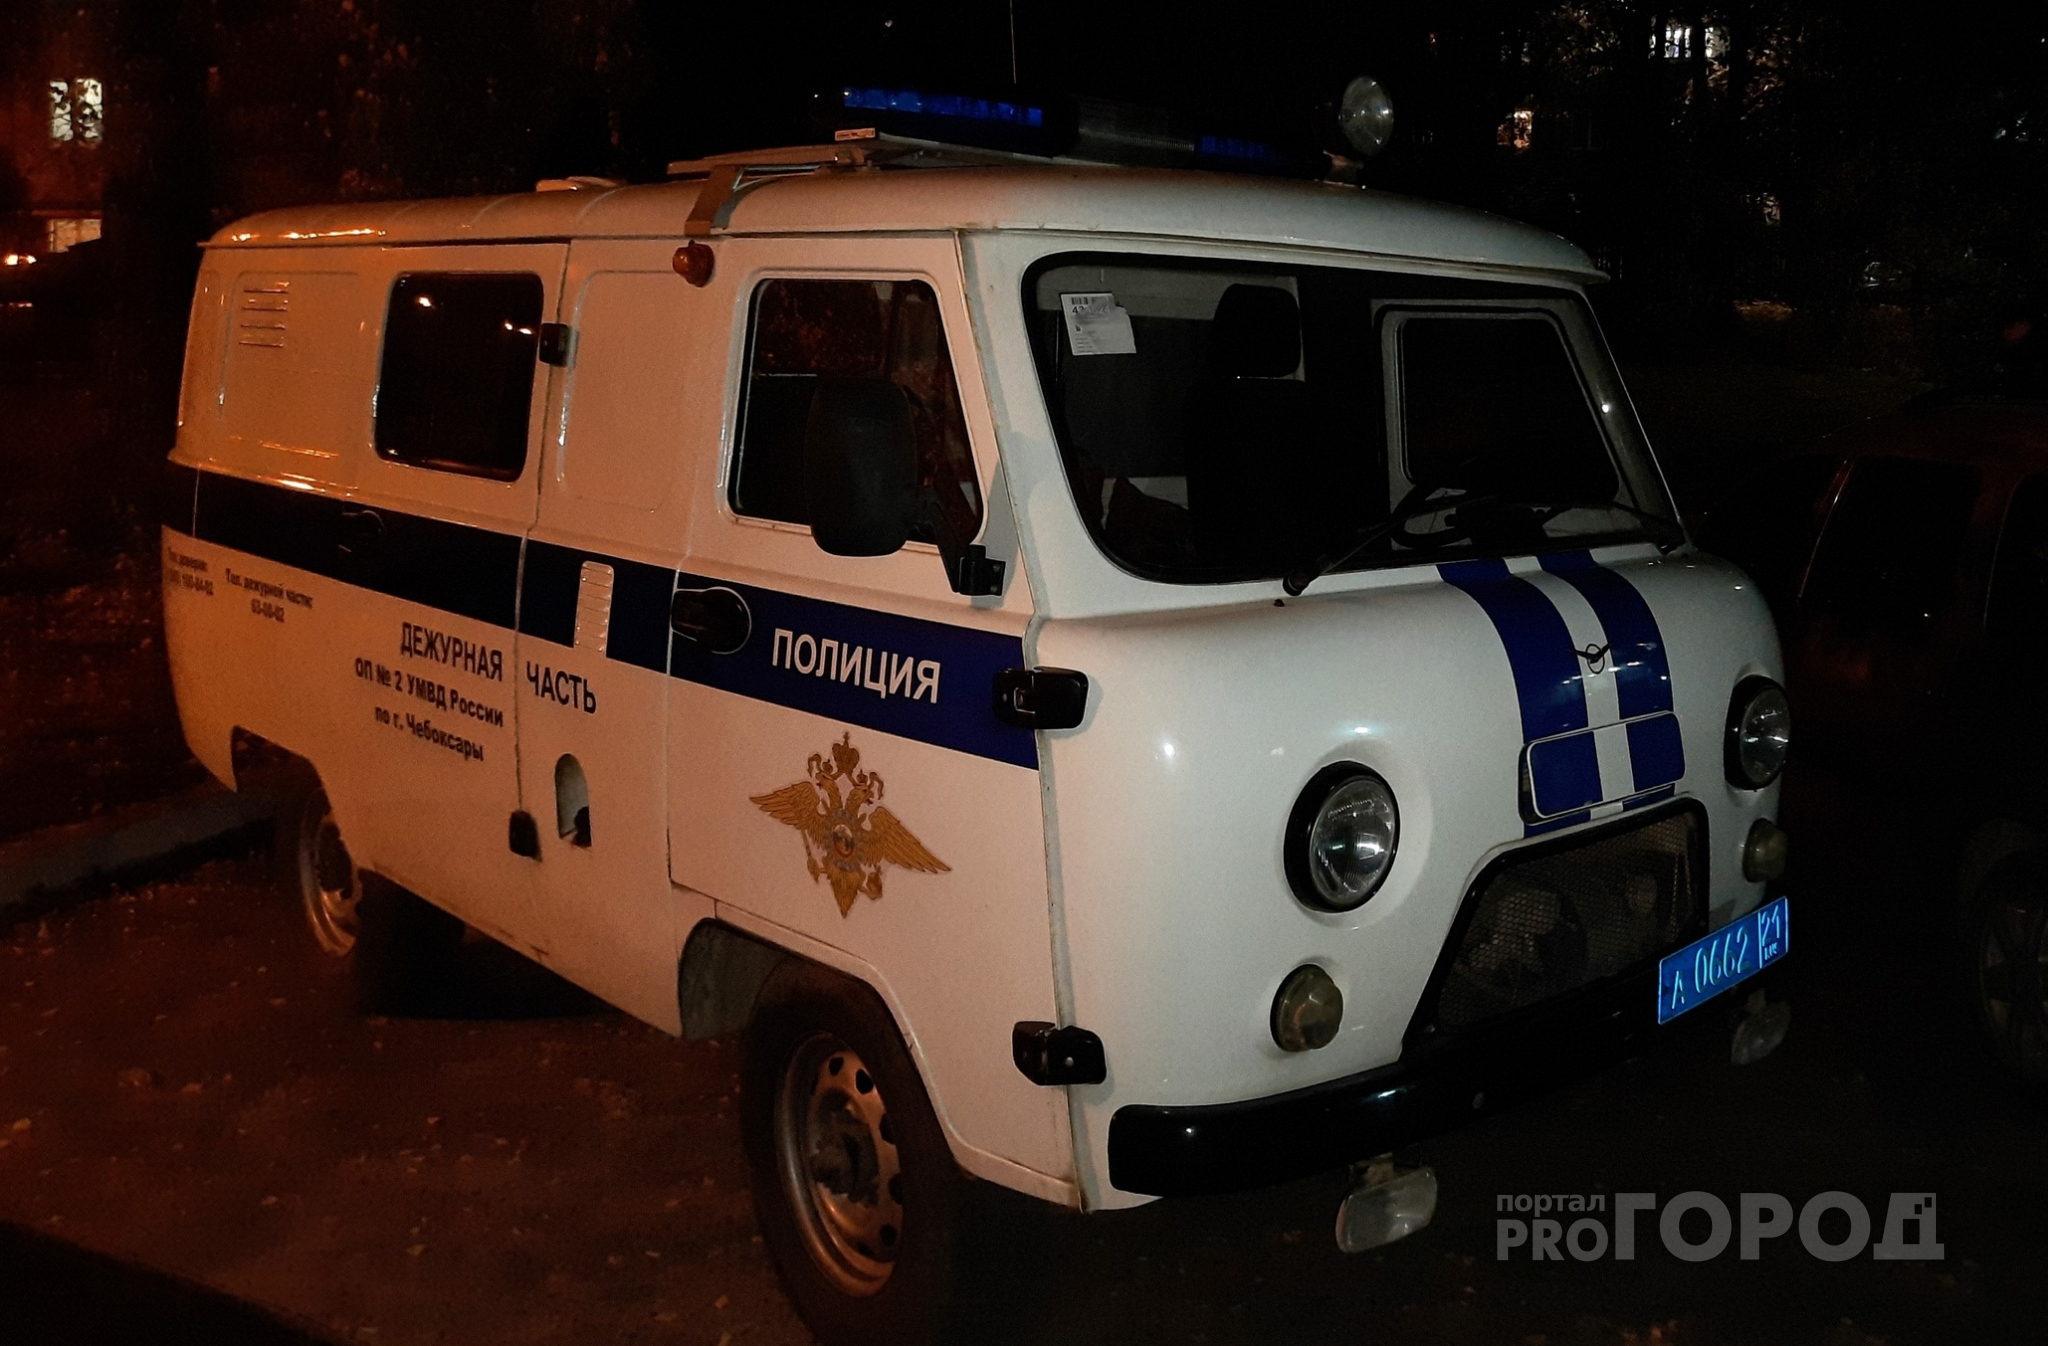 Полиция задержала группу воров: только конфет и оливкового масла набрали почти на 13 тысяч рублей